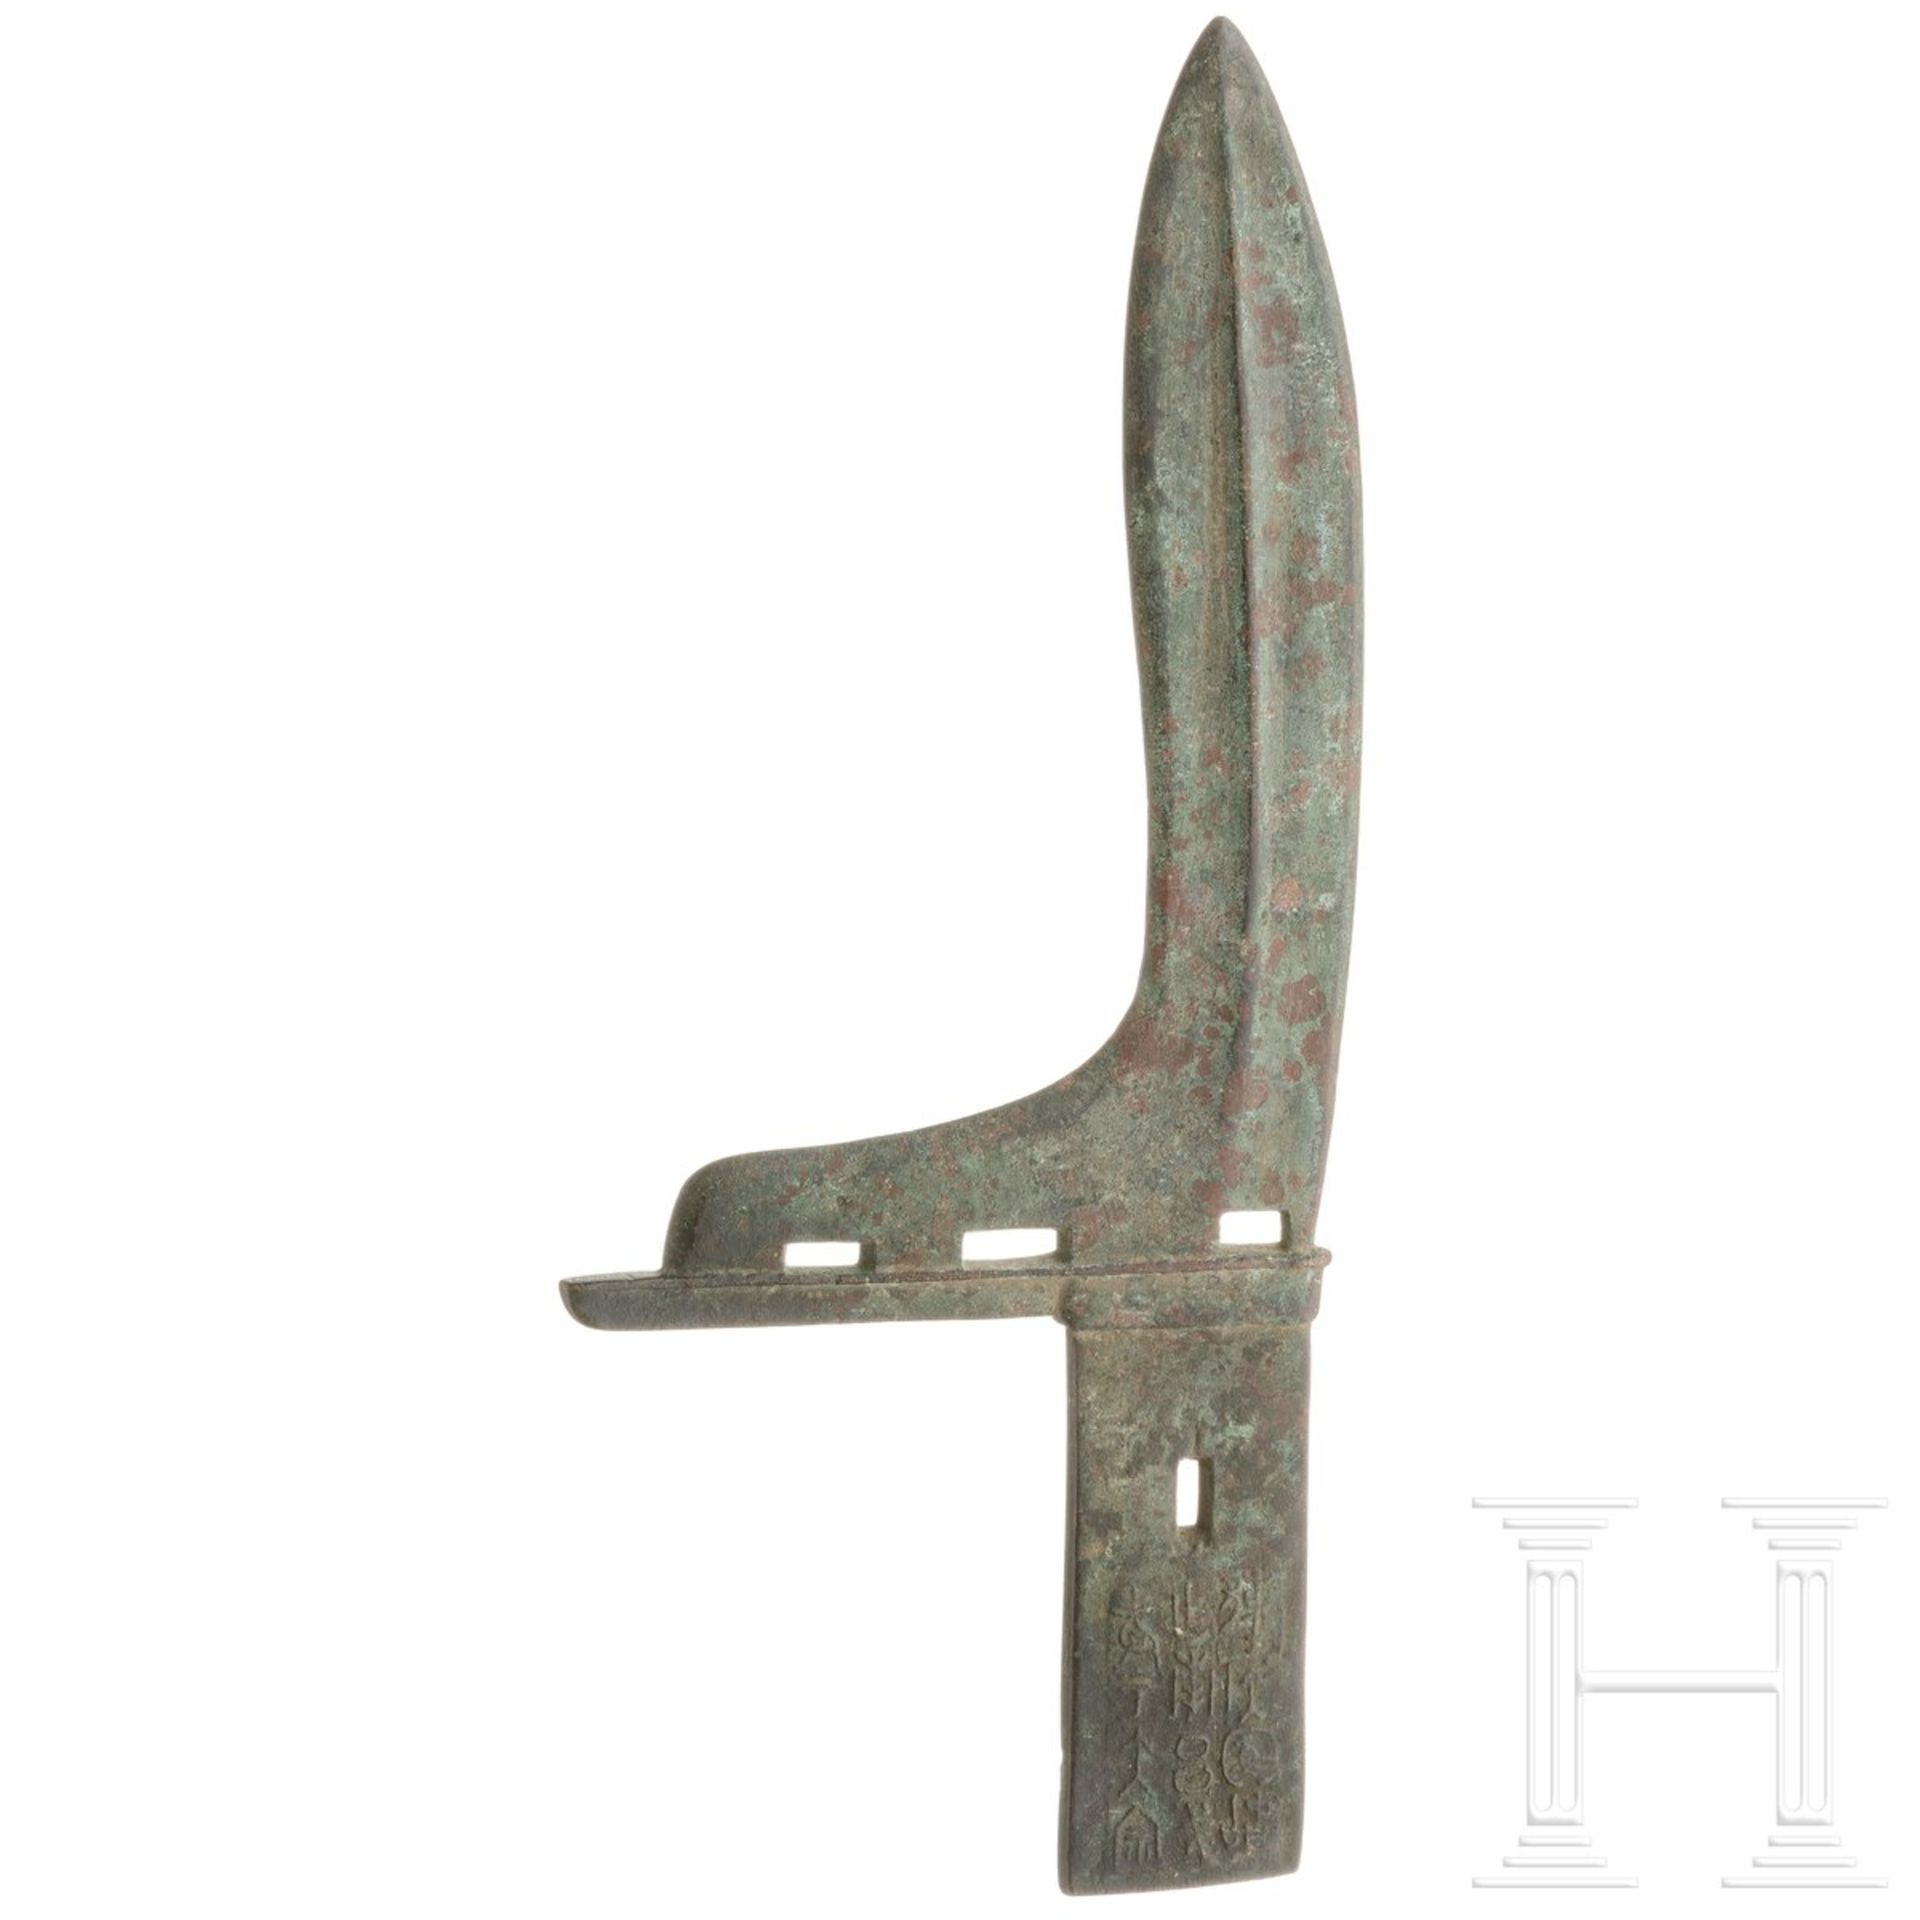 Bronze-Ge (Dolchaxt), China, Zhou-Dynastie, 8. - 3. Jhdt. v. Chr.